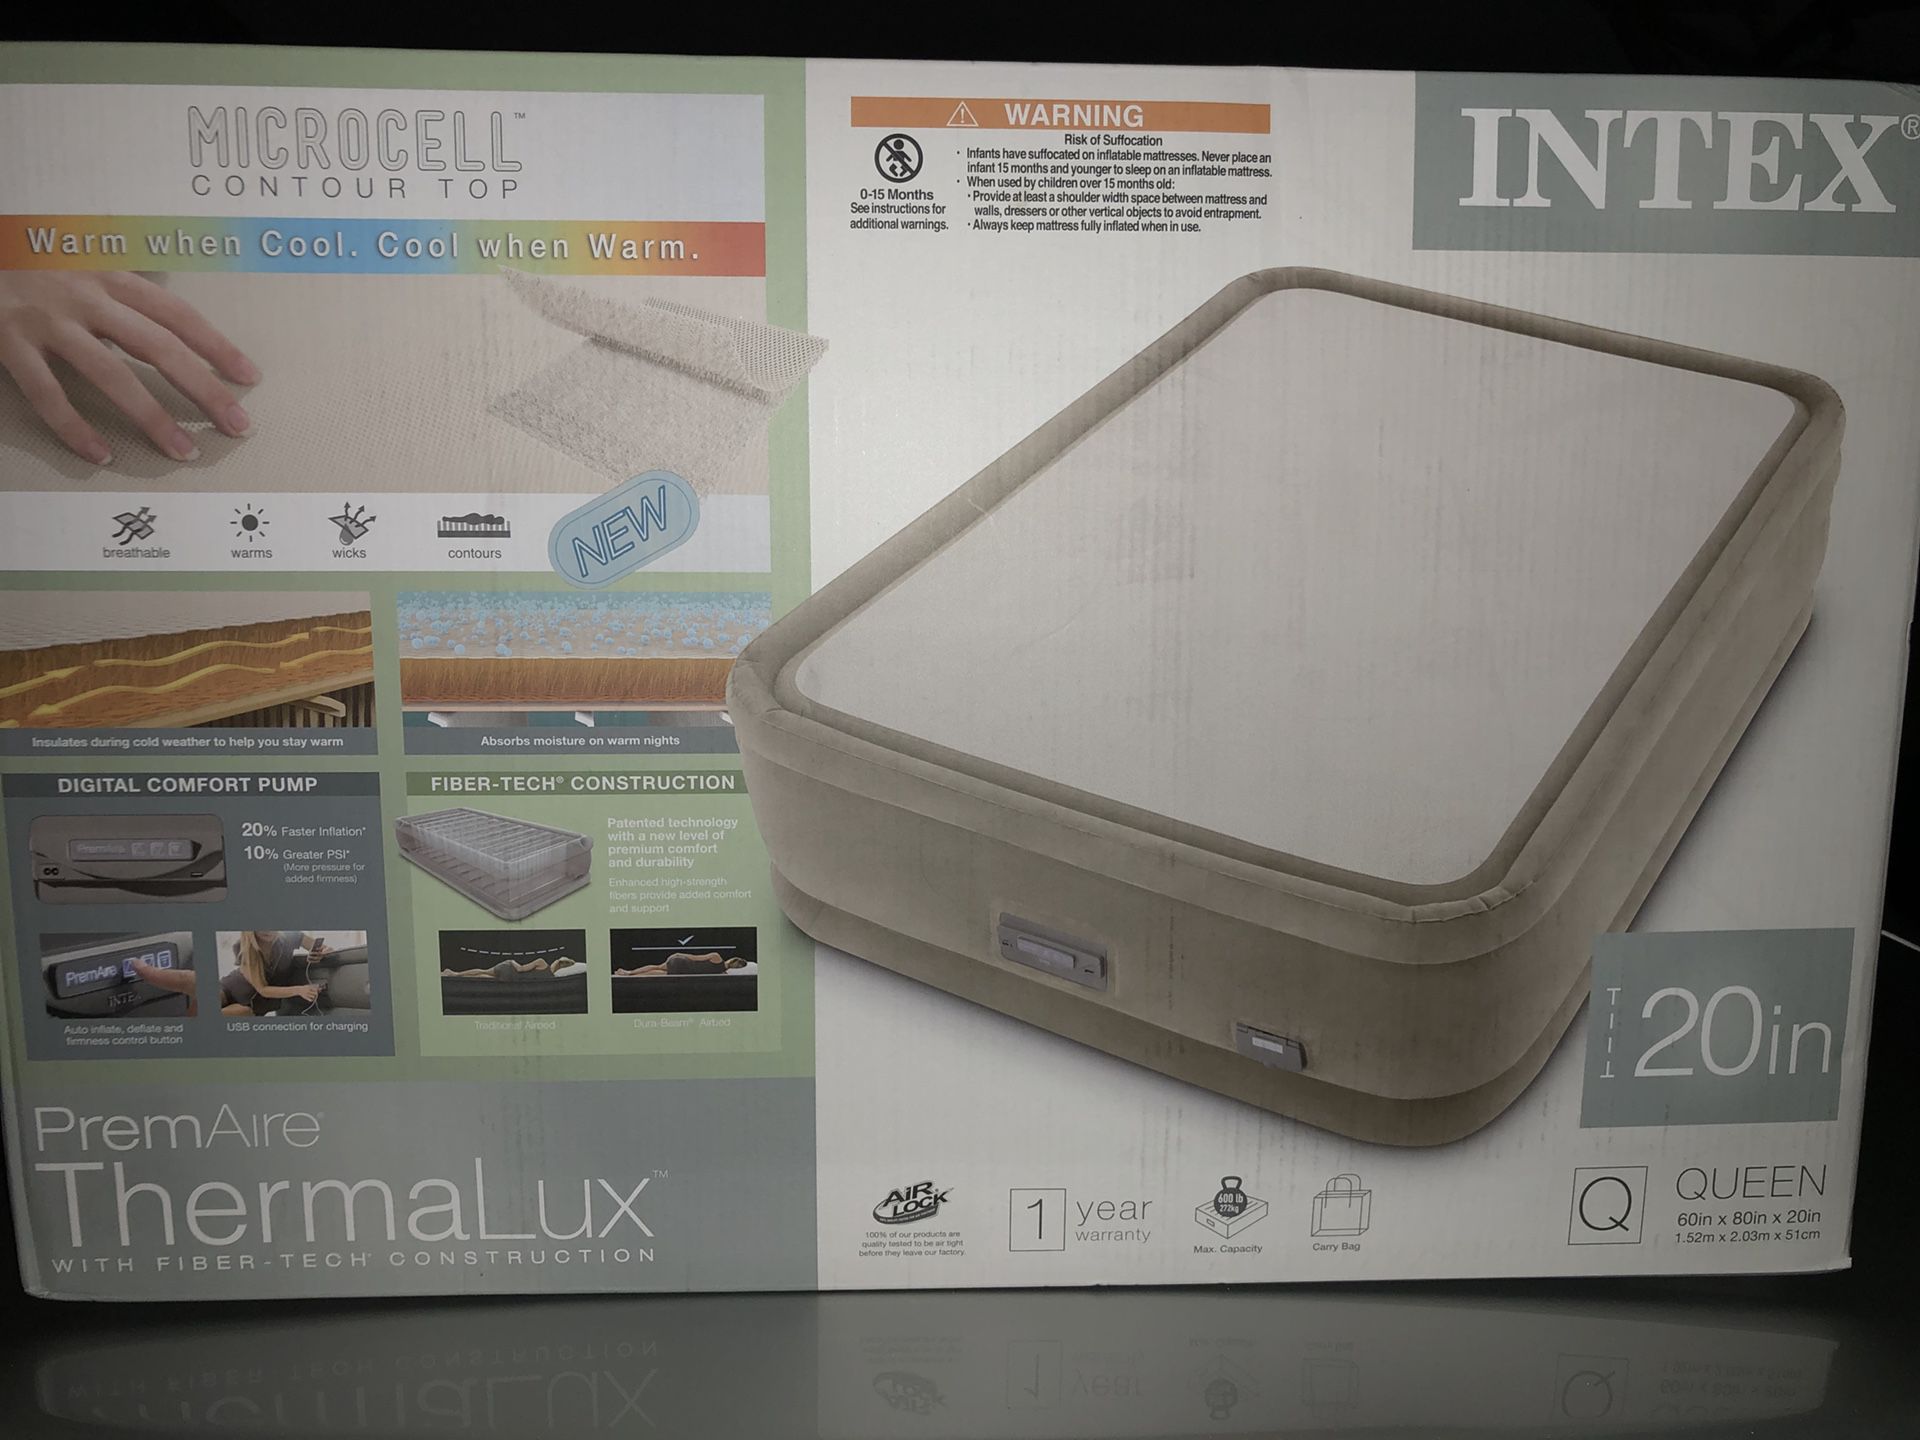 Intex thermalux queen air mattress (Brand new)